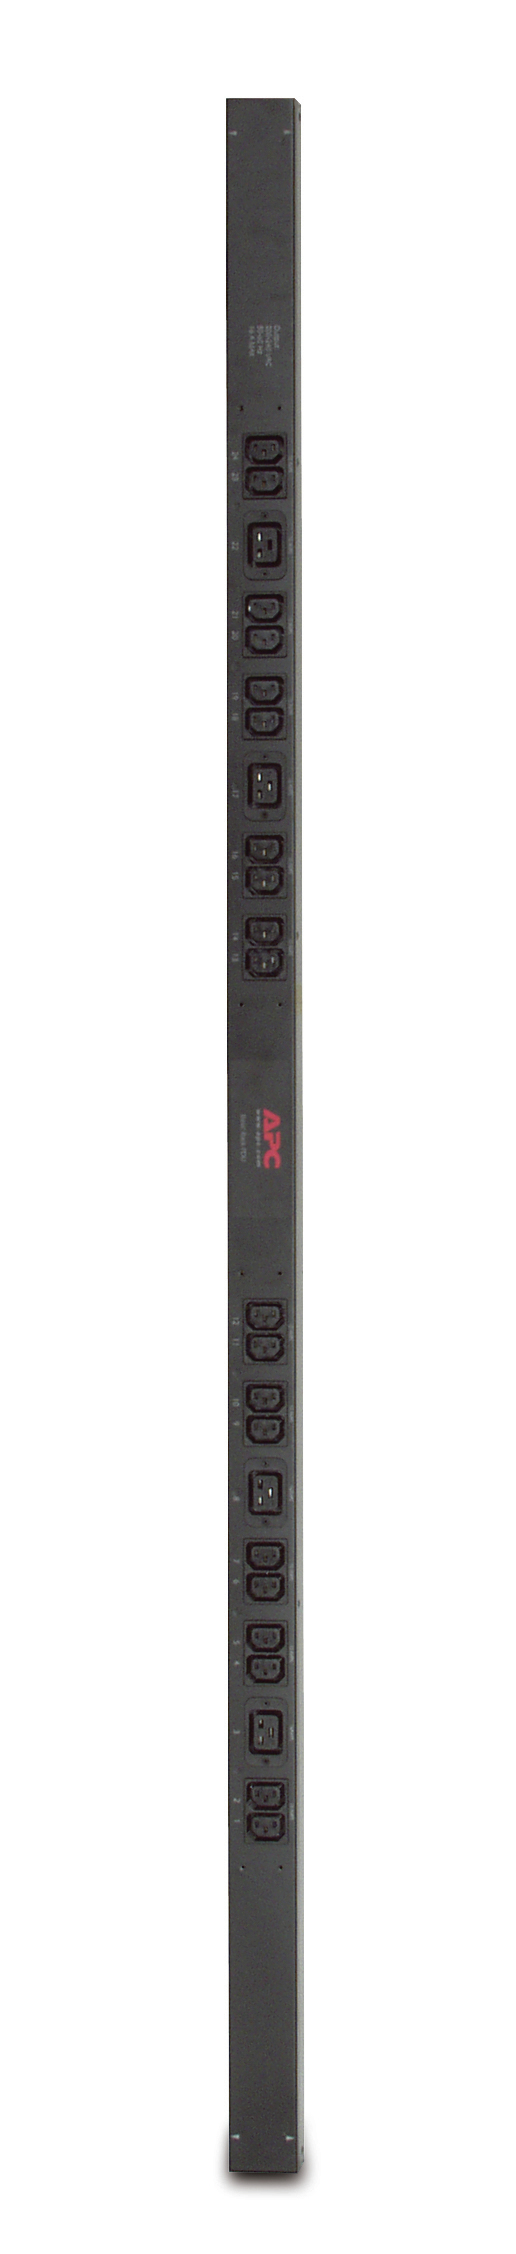 Image of APC Basic Rack PDU unità di distribuzione dell'energia (PDU) 24 presa(e) AC 0U Nero